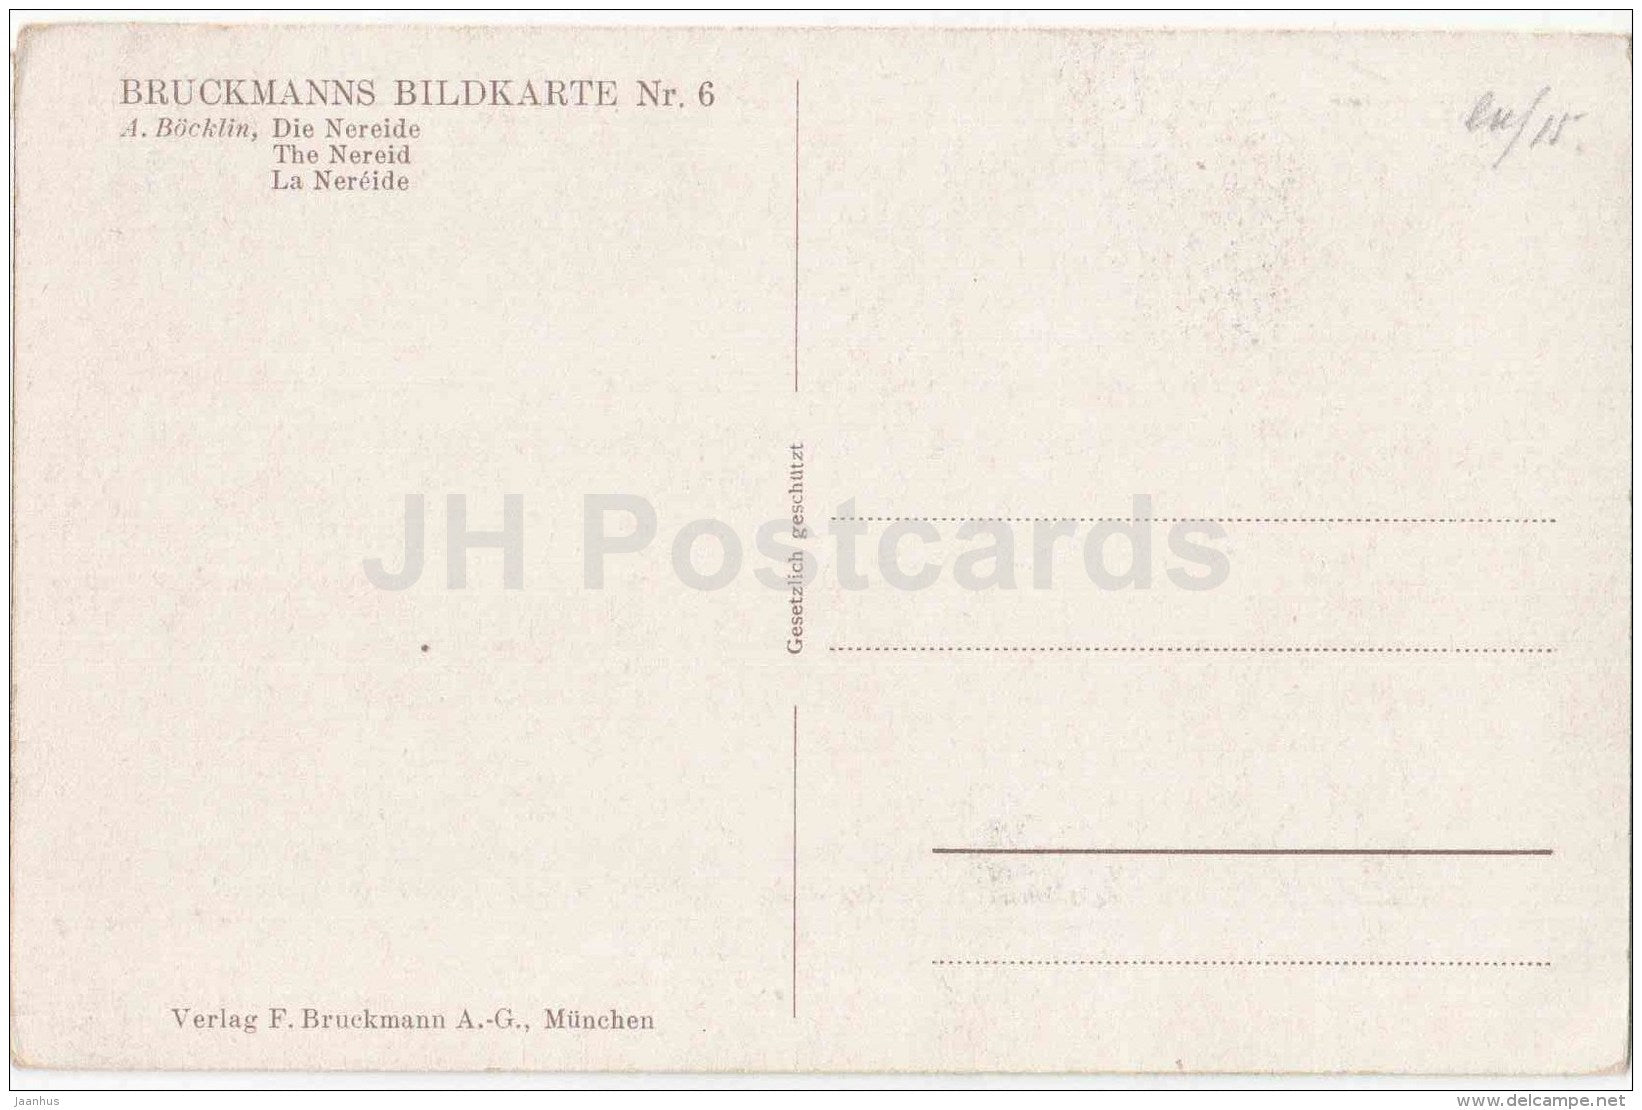 painting by A. Böcklin - Die Nereide - nereid - Bruckmanns Bildkarte - swiss art - unused - JH Postcards